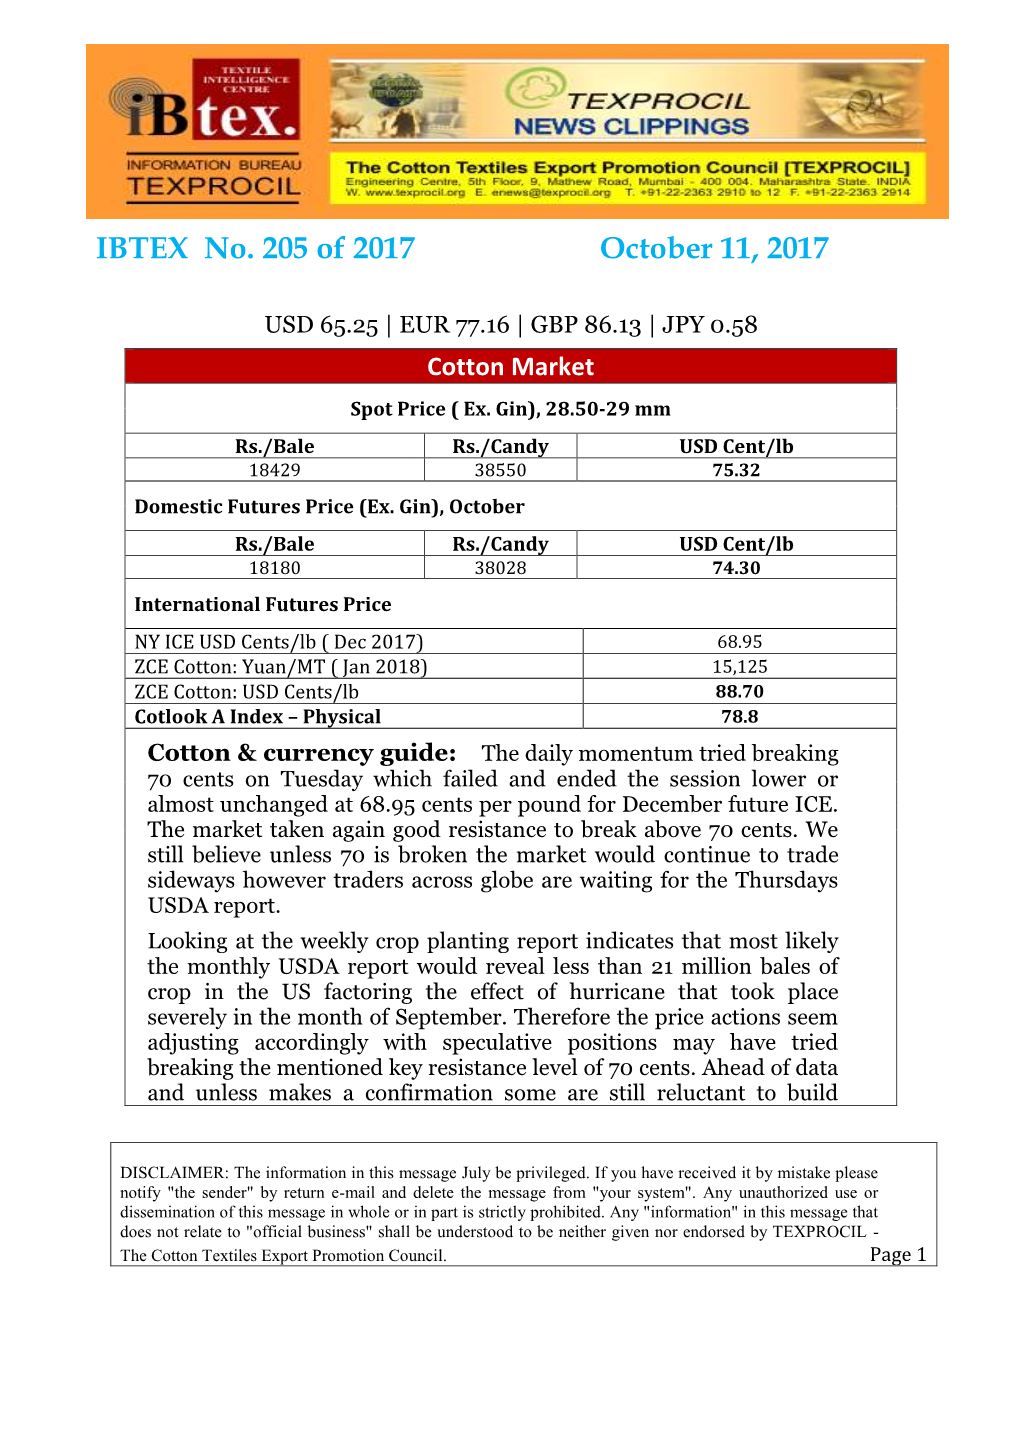 IBTEX No. 205 of 2017 October 11, 2017